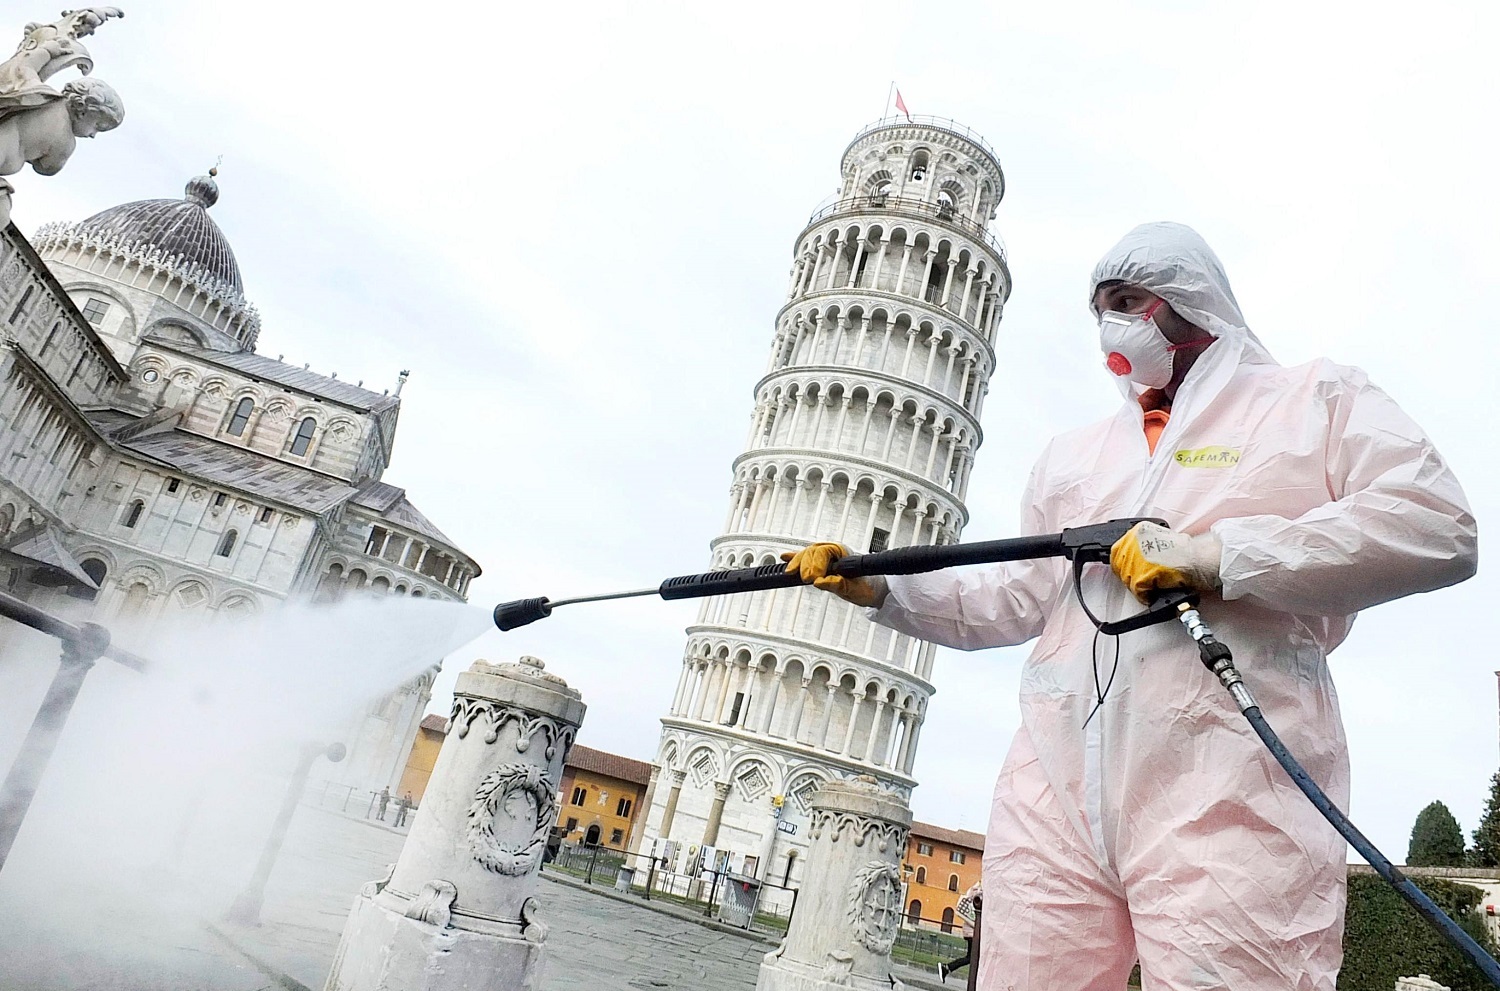 Khử trùng các khu vực gần tháp nghiêng Pisa, Italy vì Covid - 19